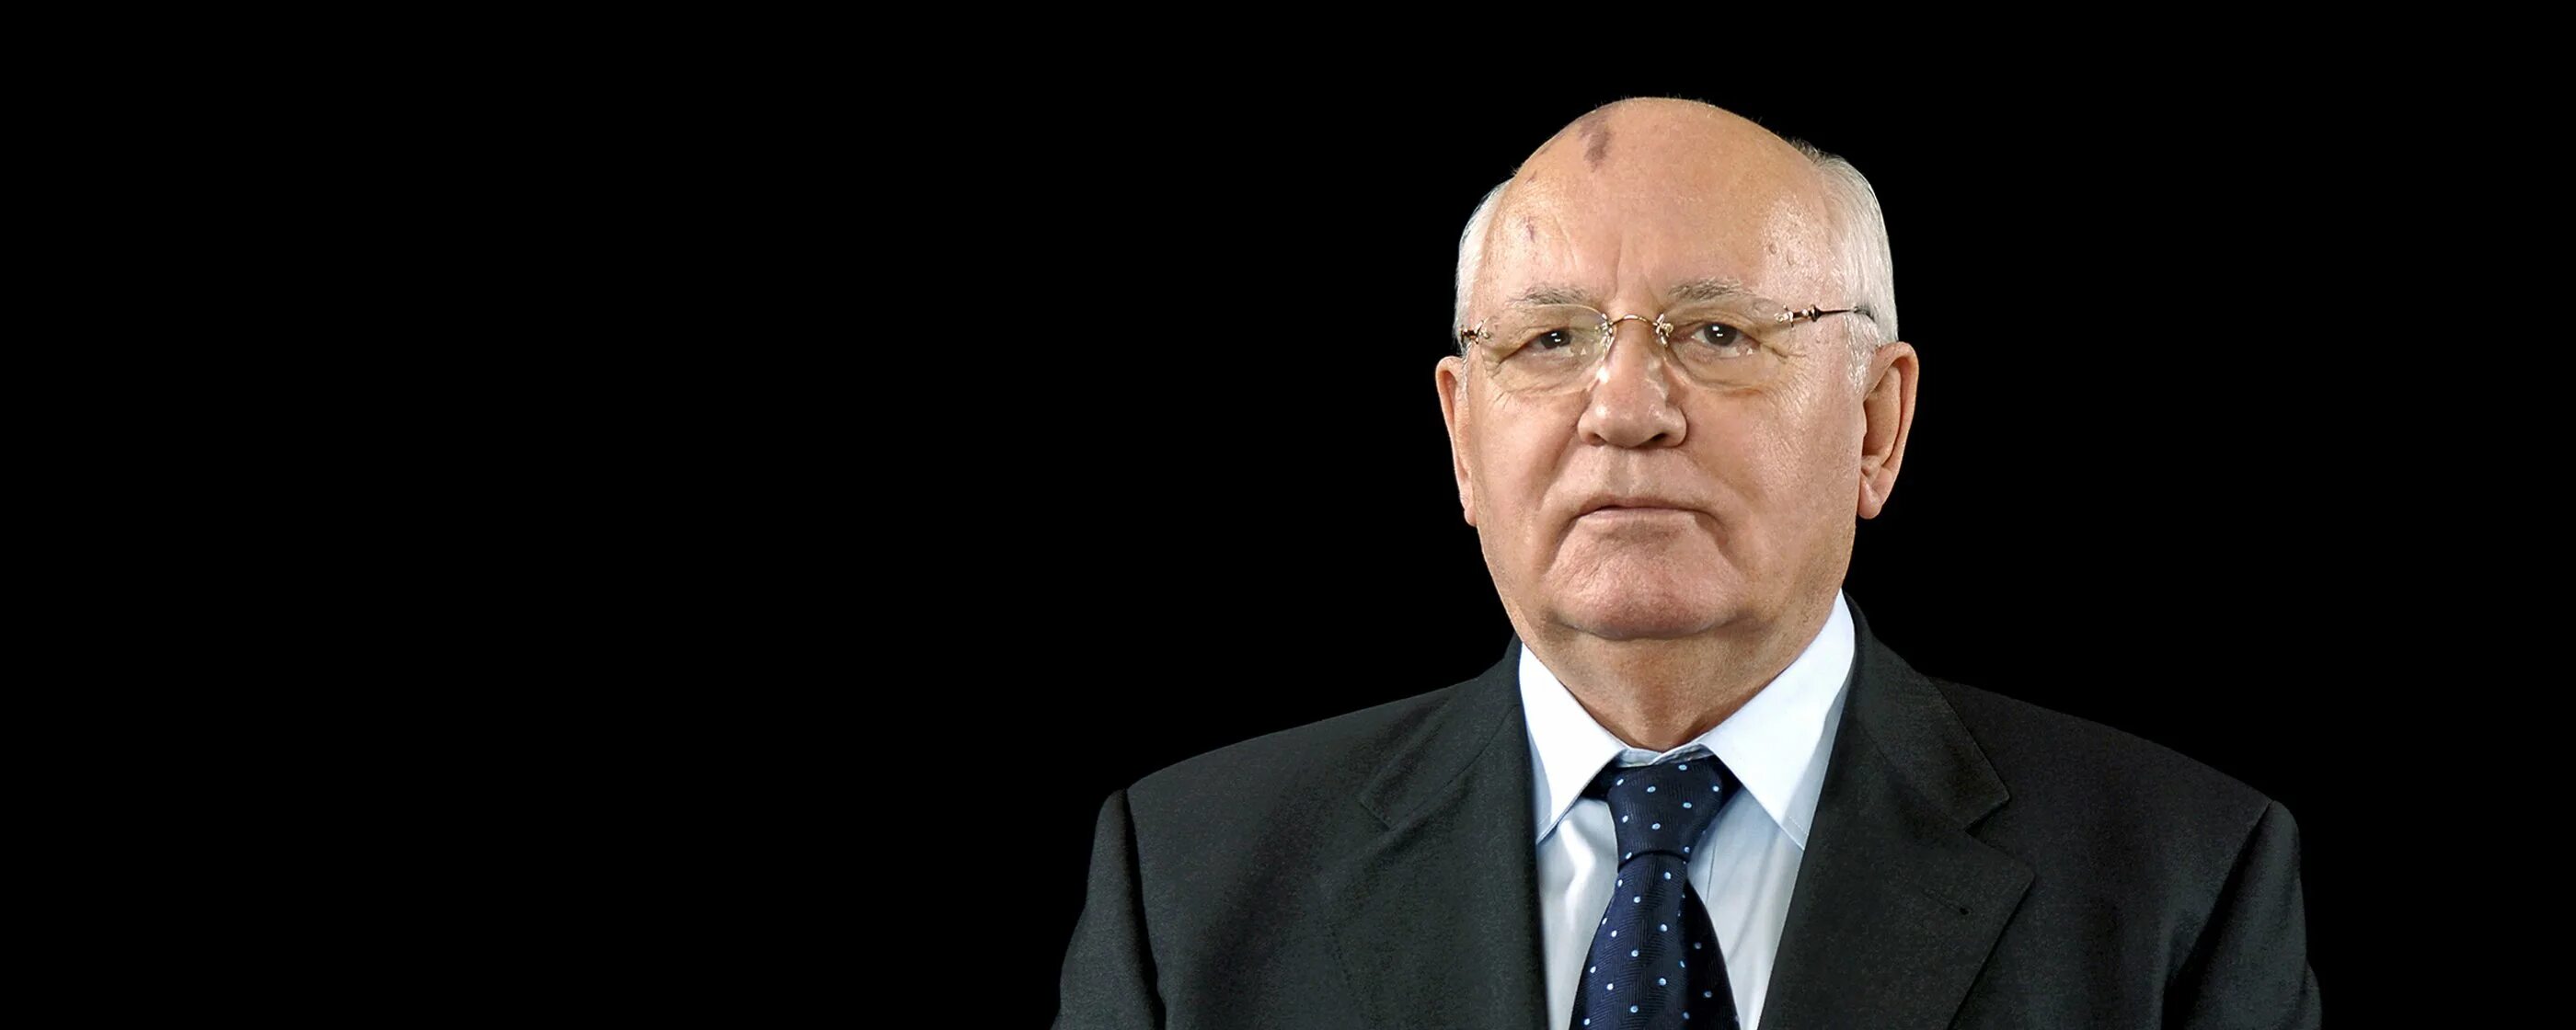 Состояние здоровья горбачева. Горбачев портрет. Горбачев 1991.